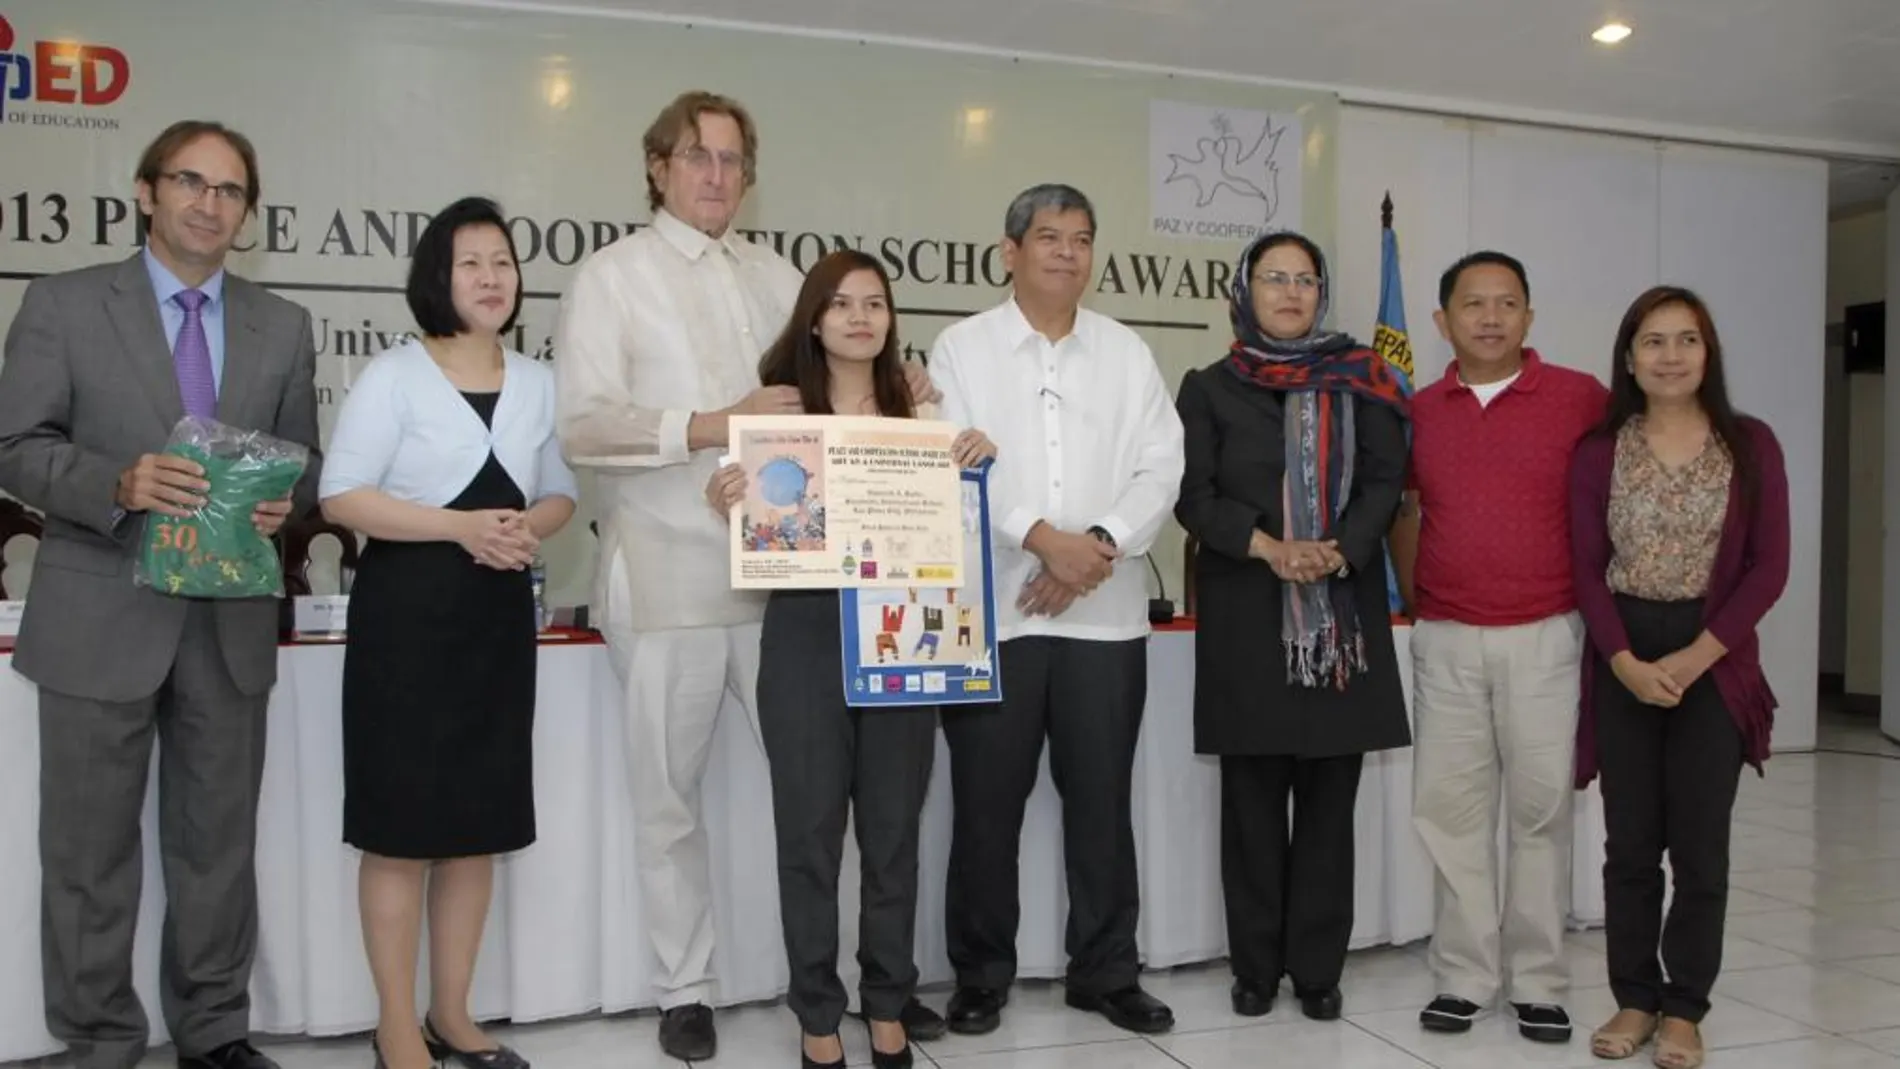 Filipinas recibe los Premios Escolares españoles 2013 de Paz y Cooperación